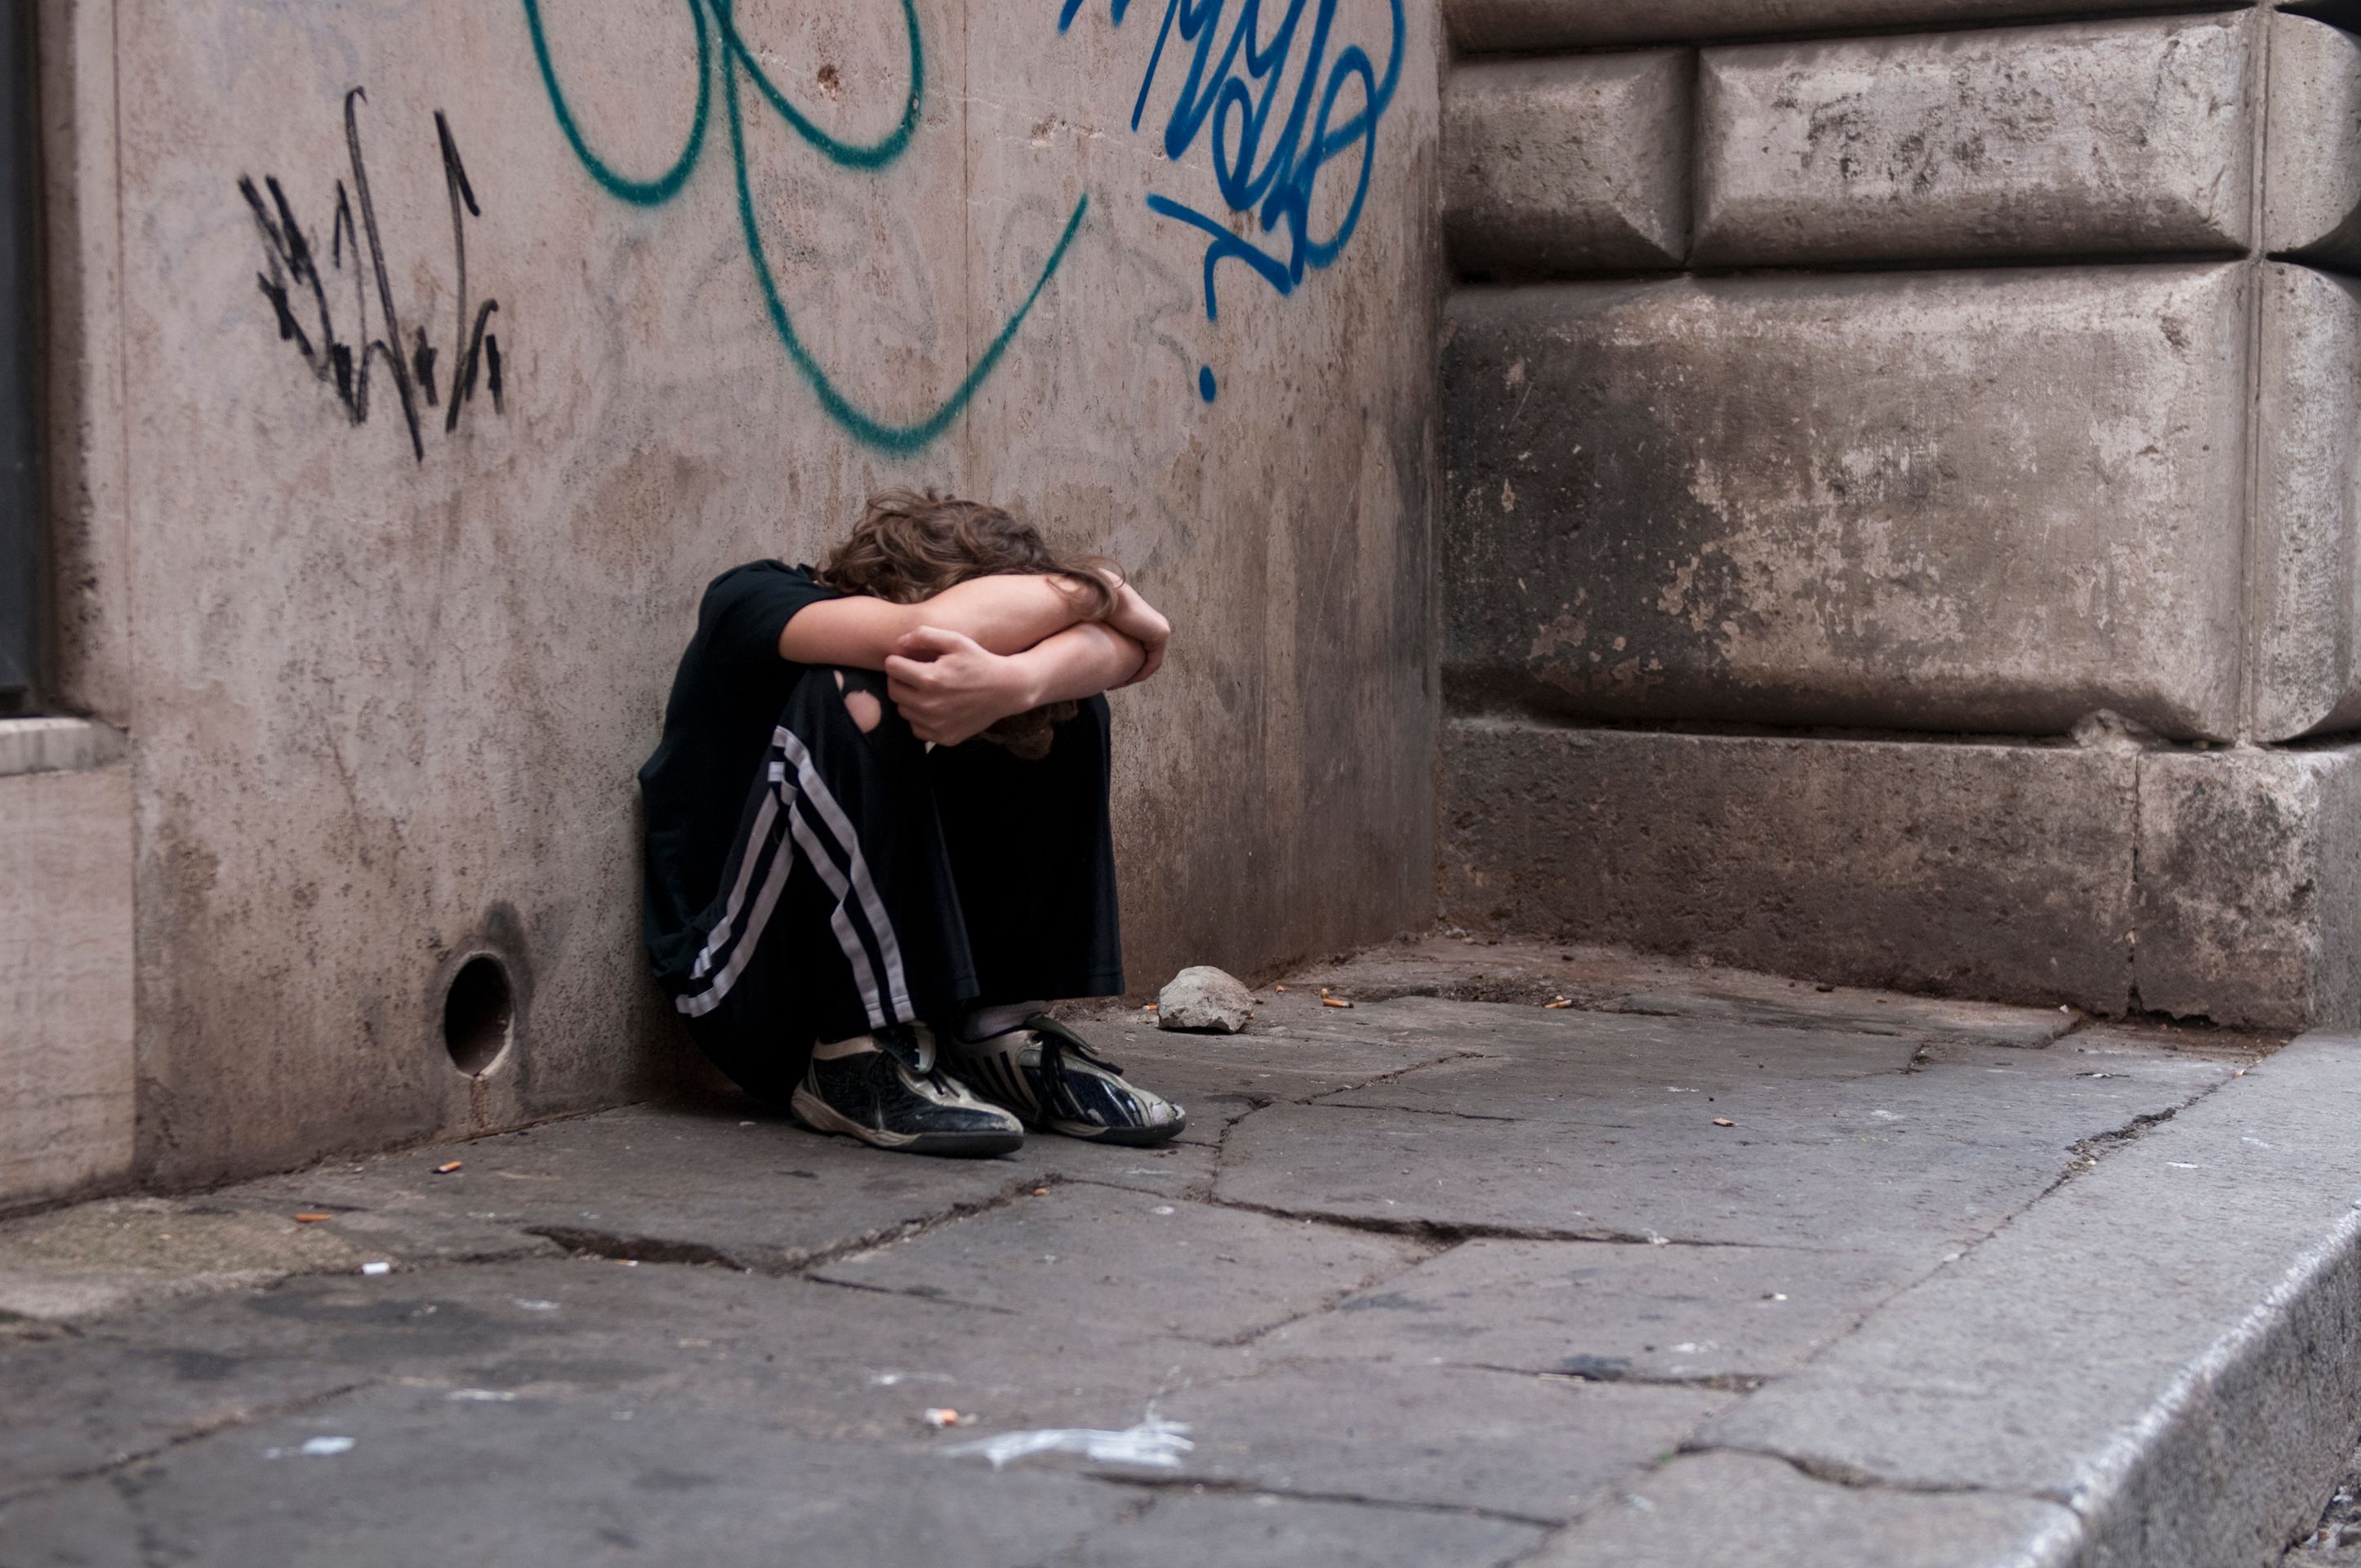 Boy huddled and alone on city street